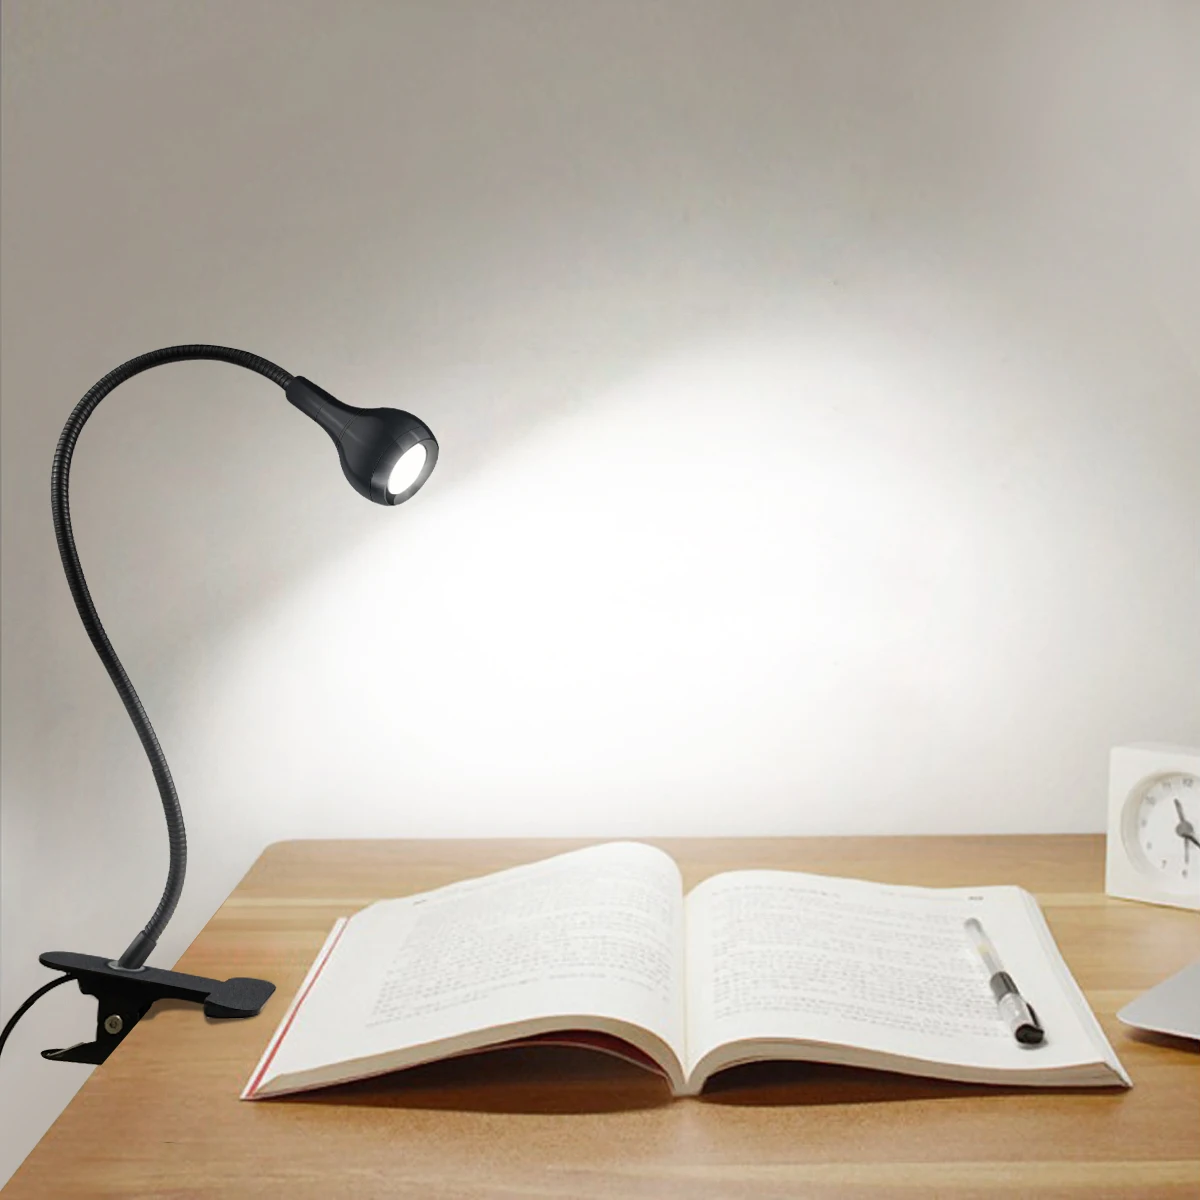 USB-лампа 5 В, светодиодная лампа для чтения книг, гибкая настольная лампа для чтения, светодиодная настольная лампа для ночного освещения спальни у кровати С зажимом-держателем0